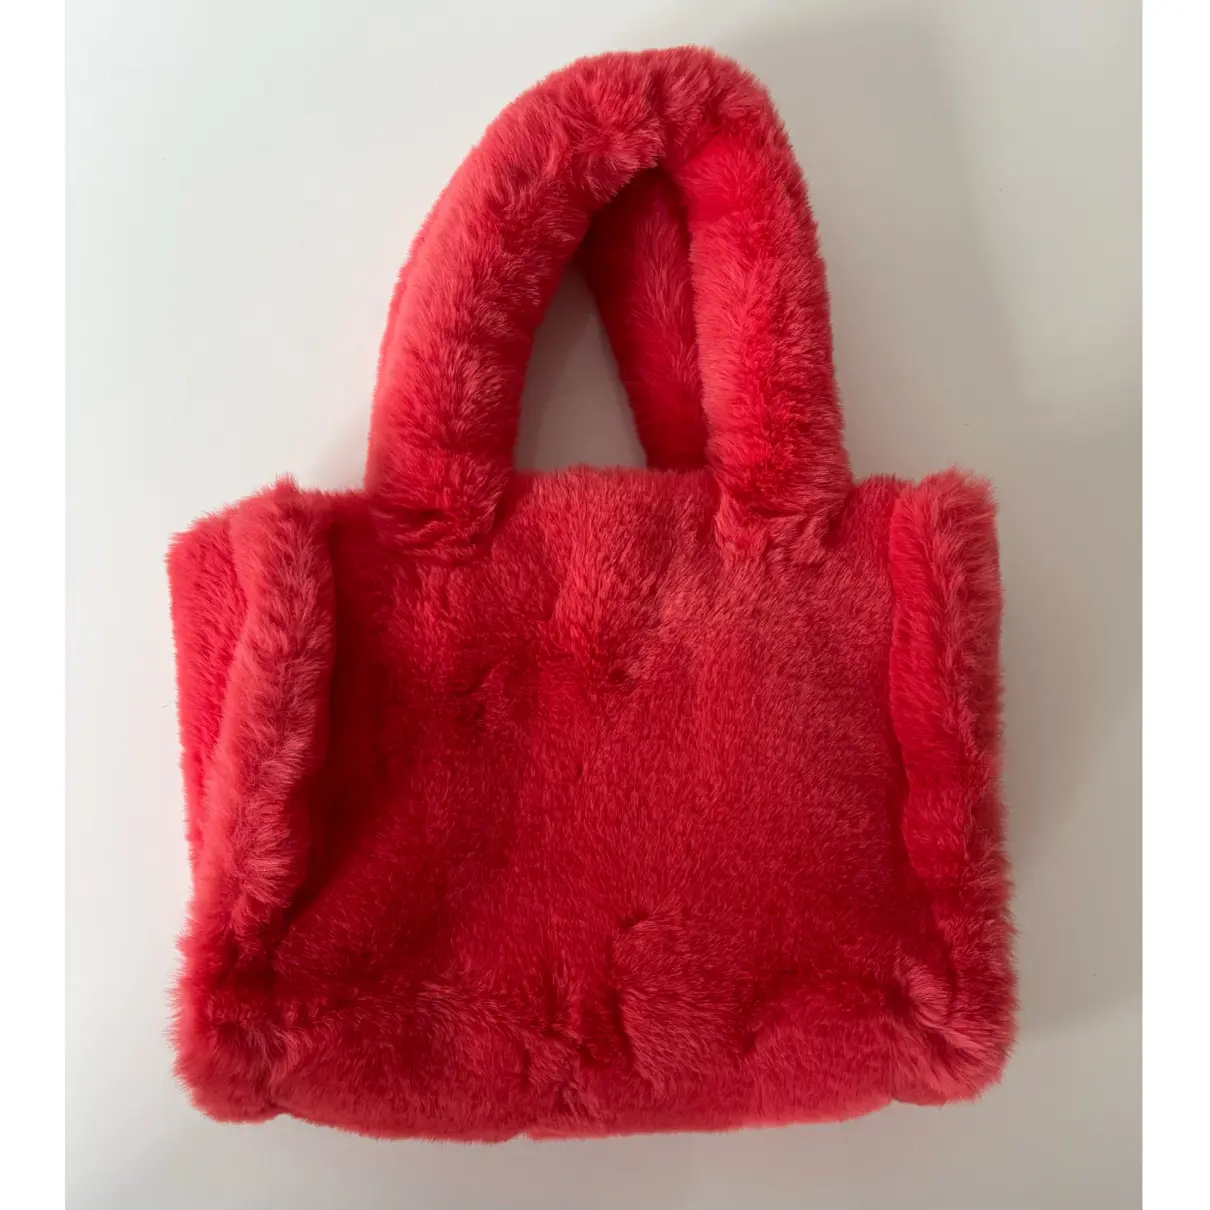 Buy Stand studio Faux fur handbag online